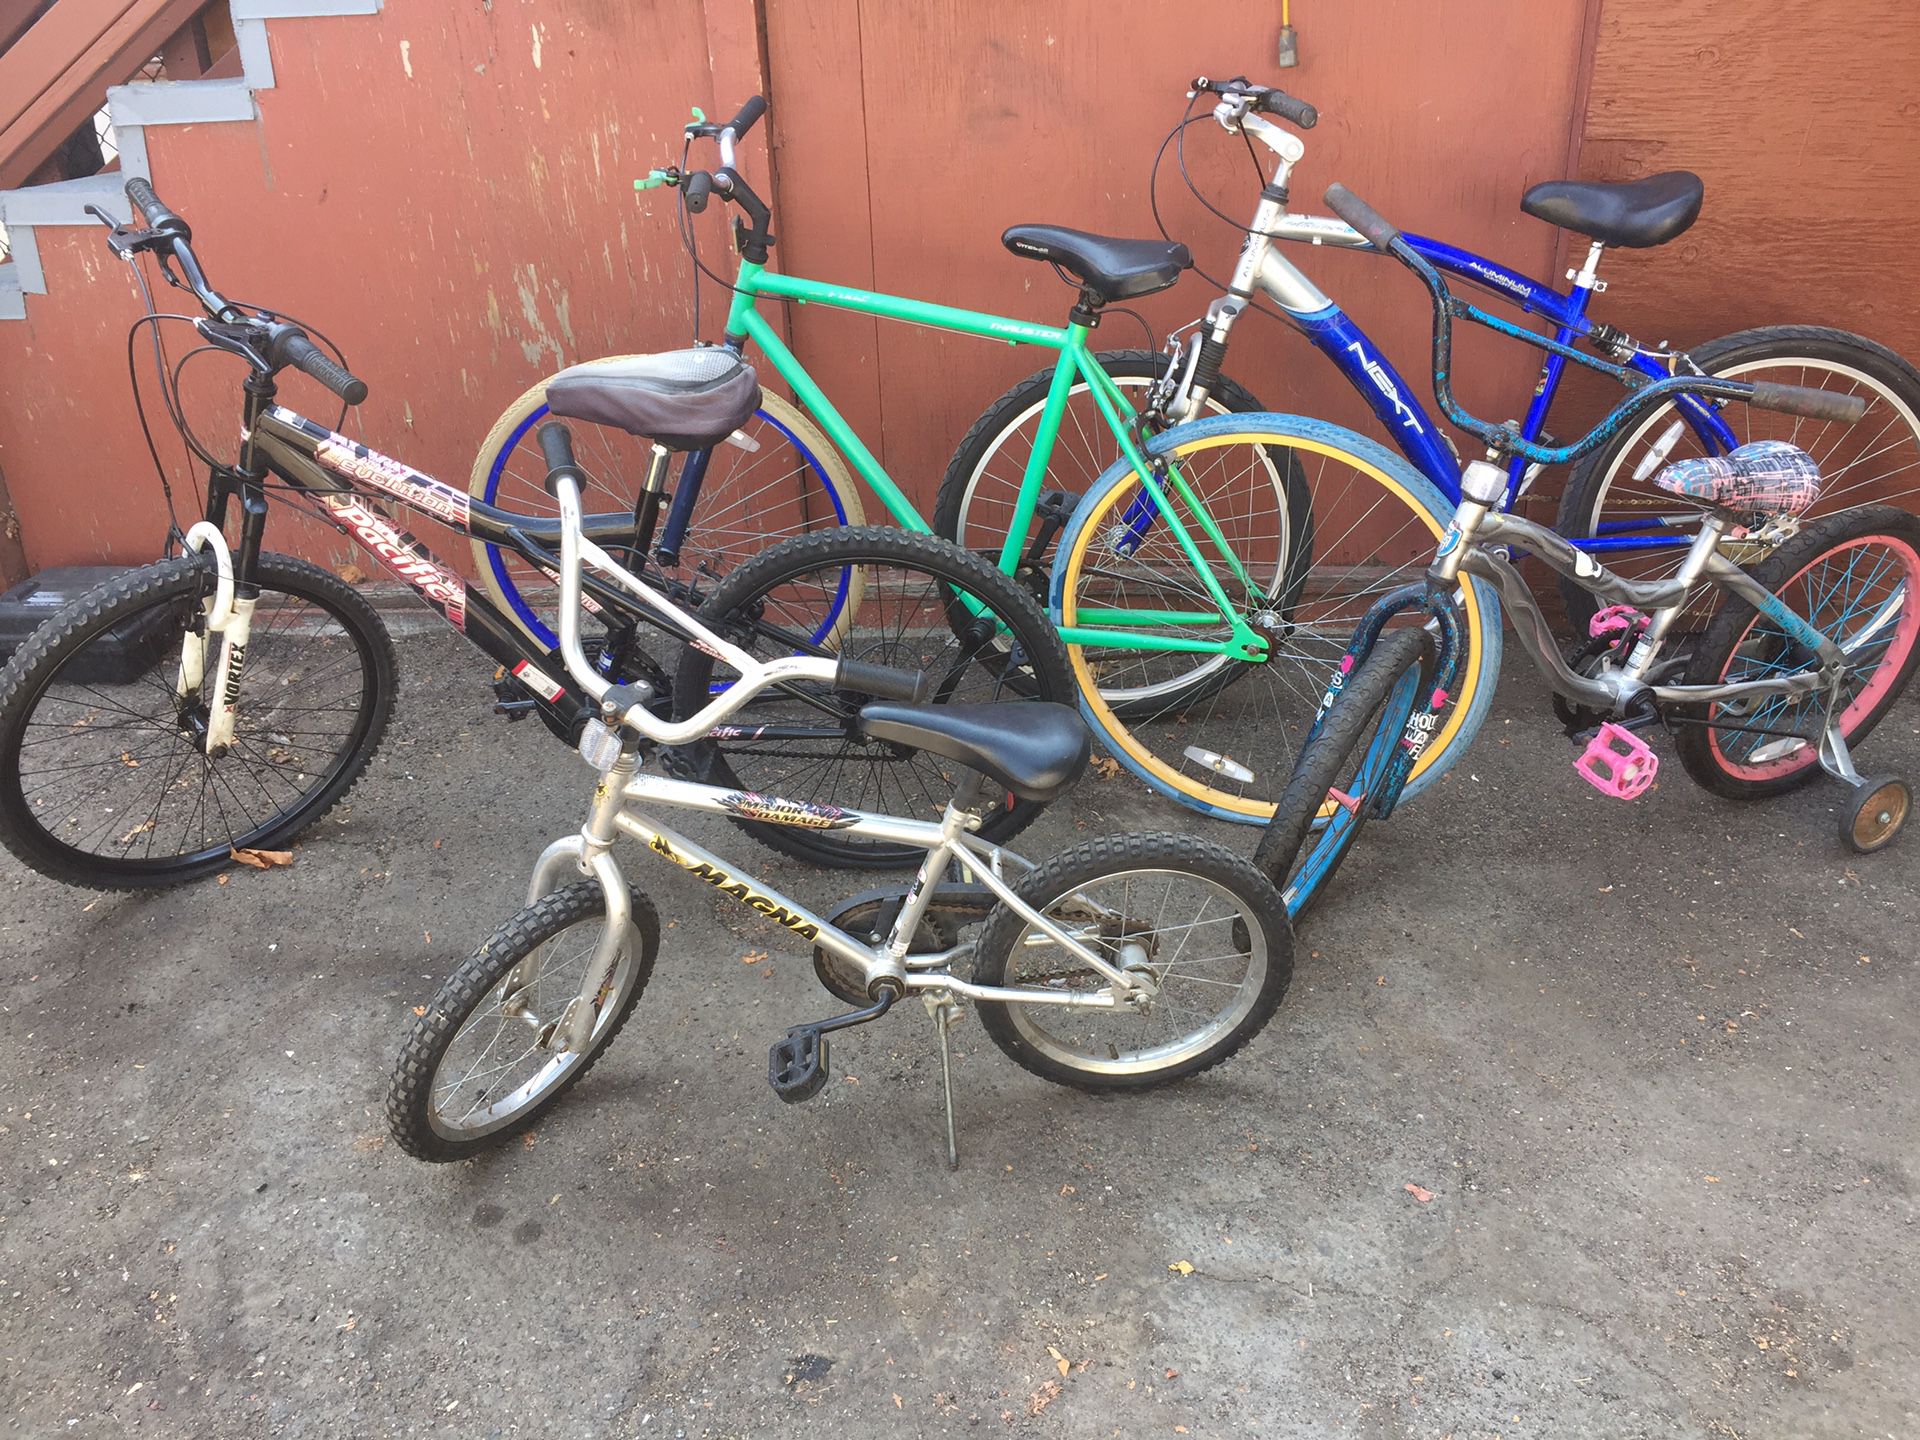 5 bikes